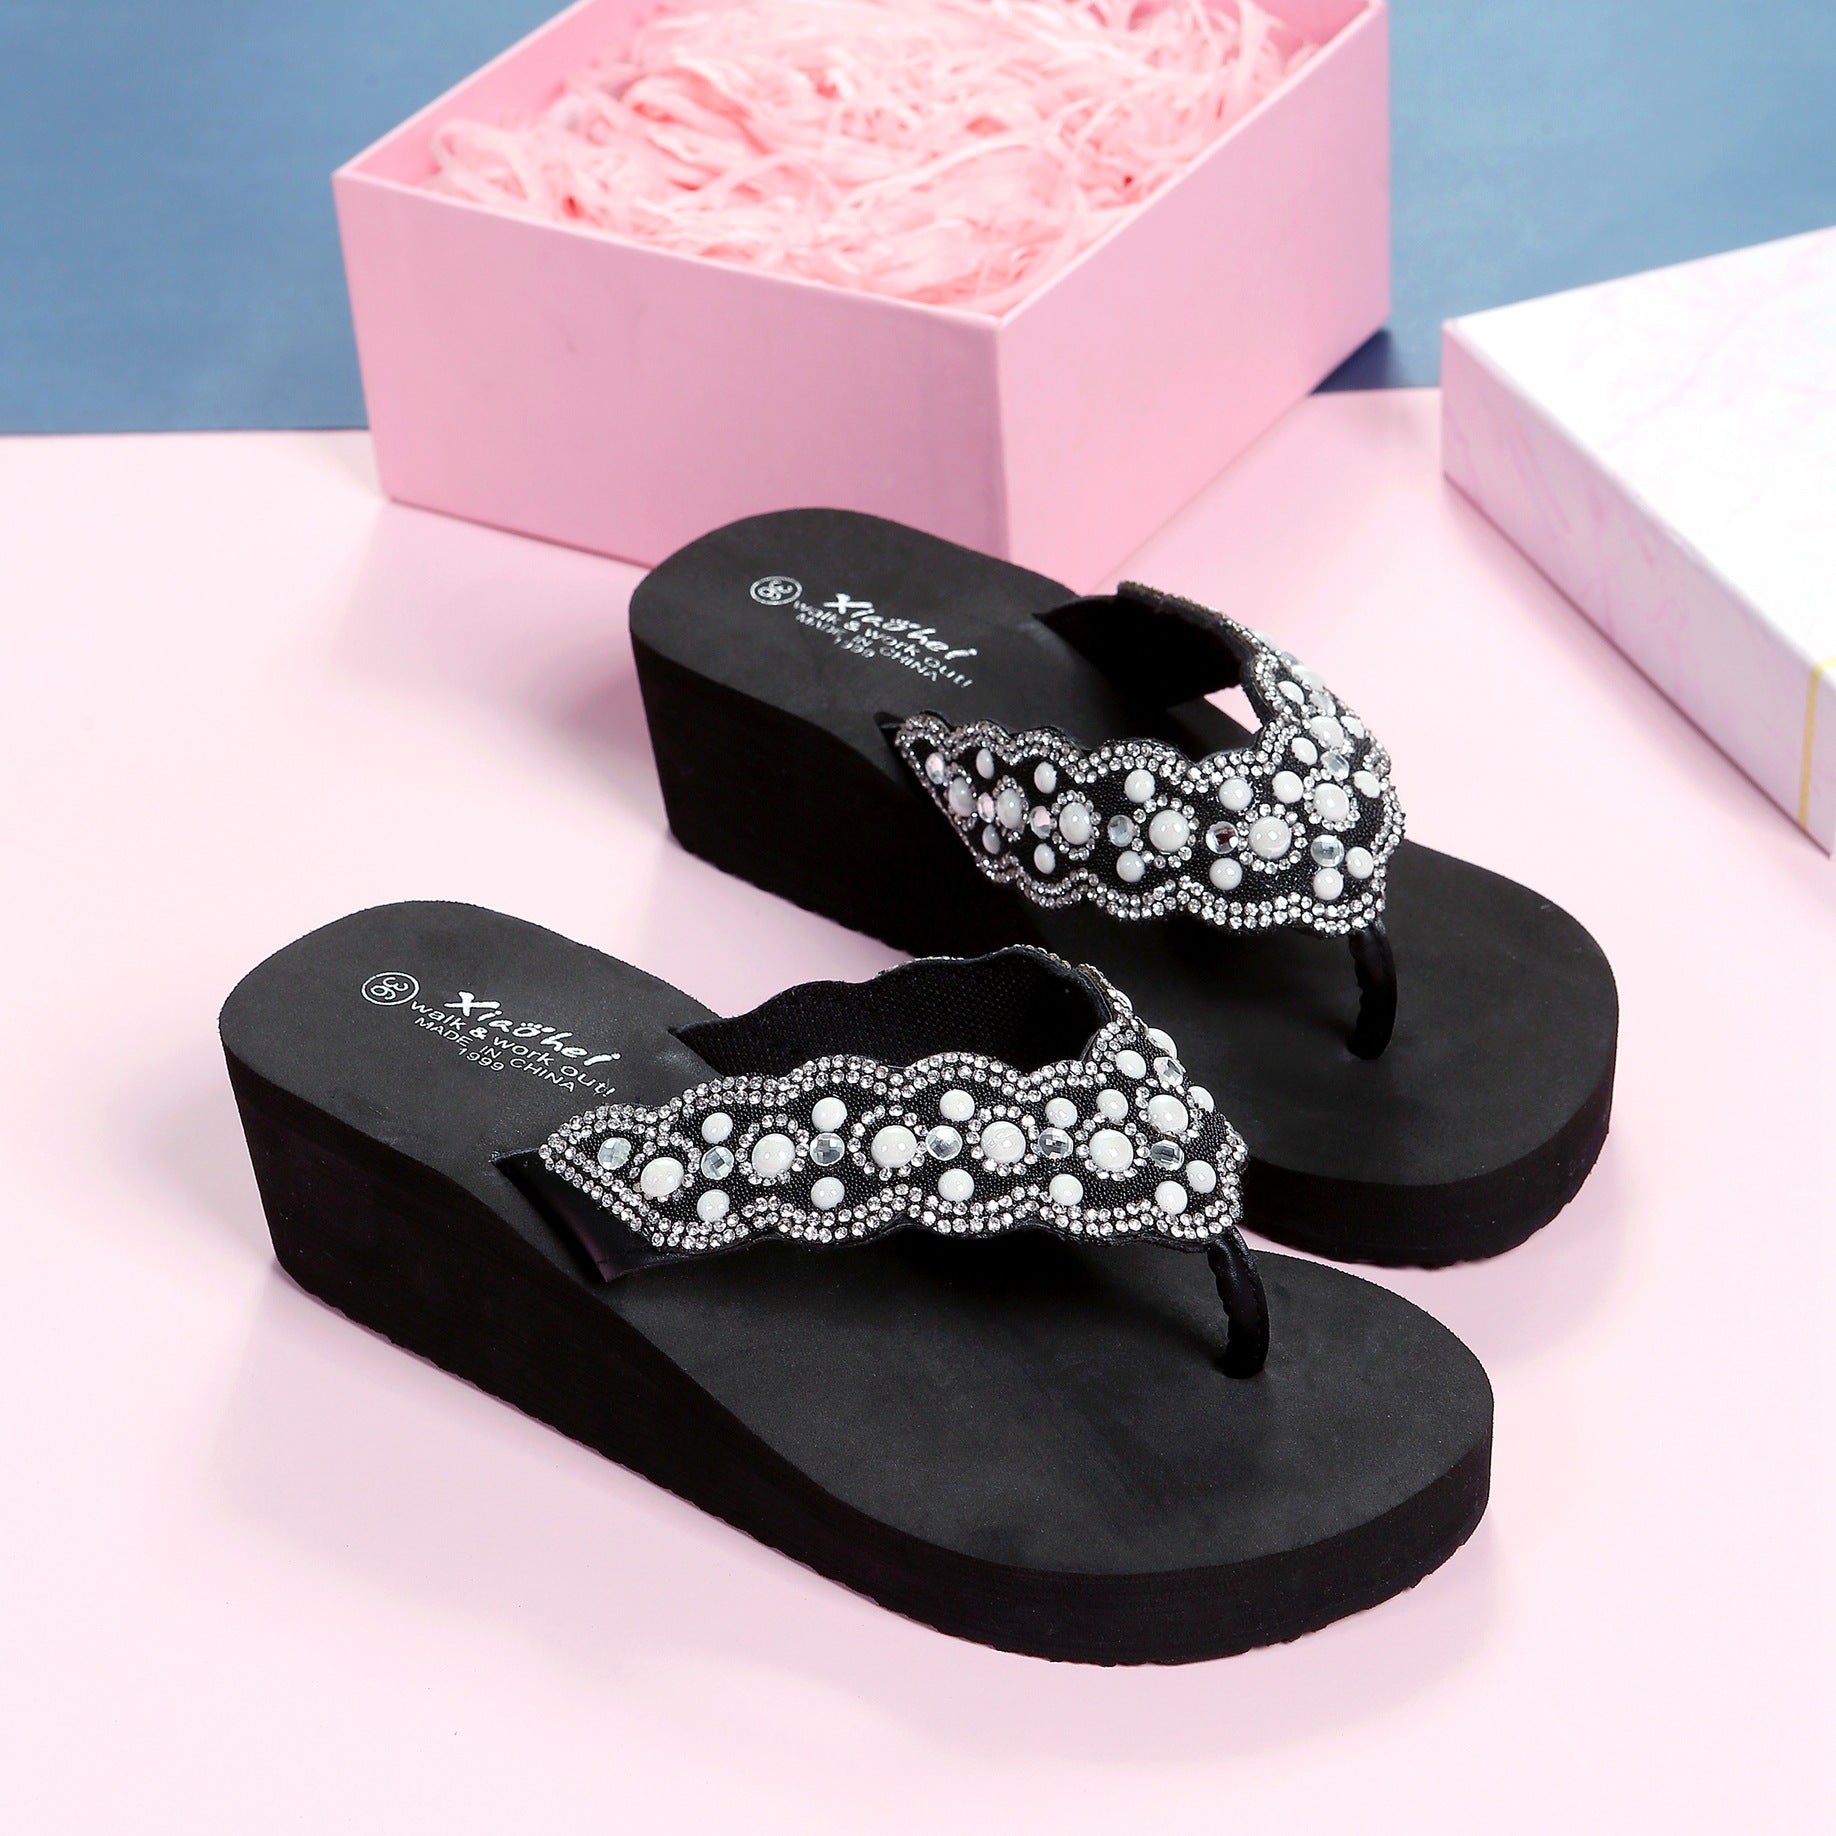 Women's For Outdoor Wear Fashion Wedge Flip-flops Slippers